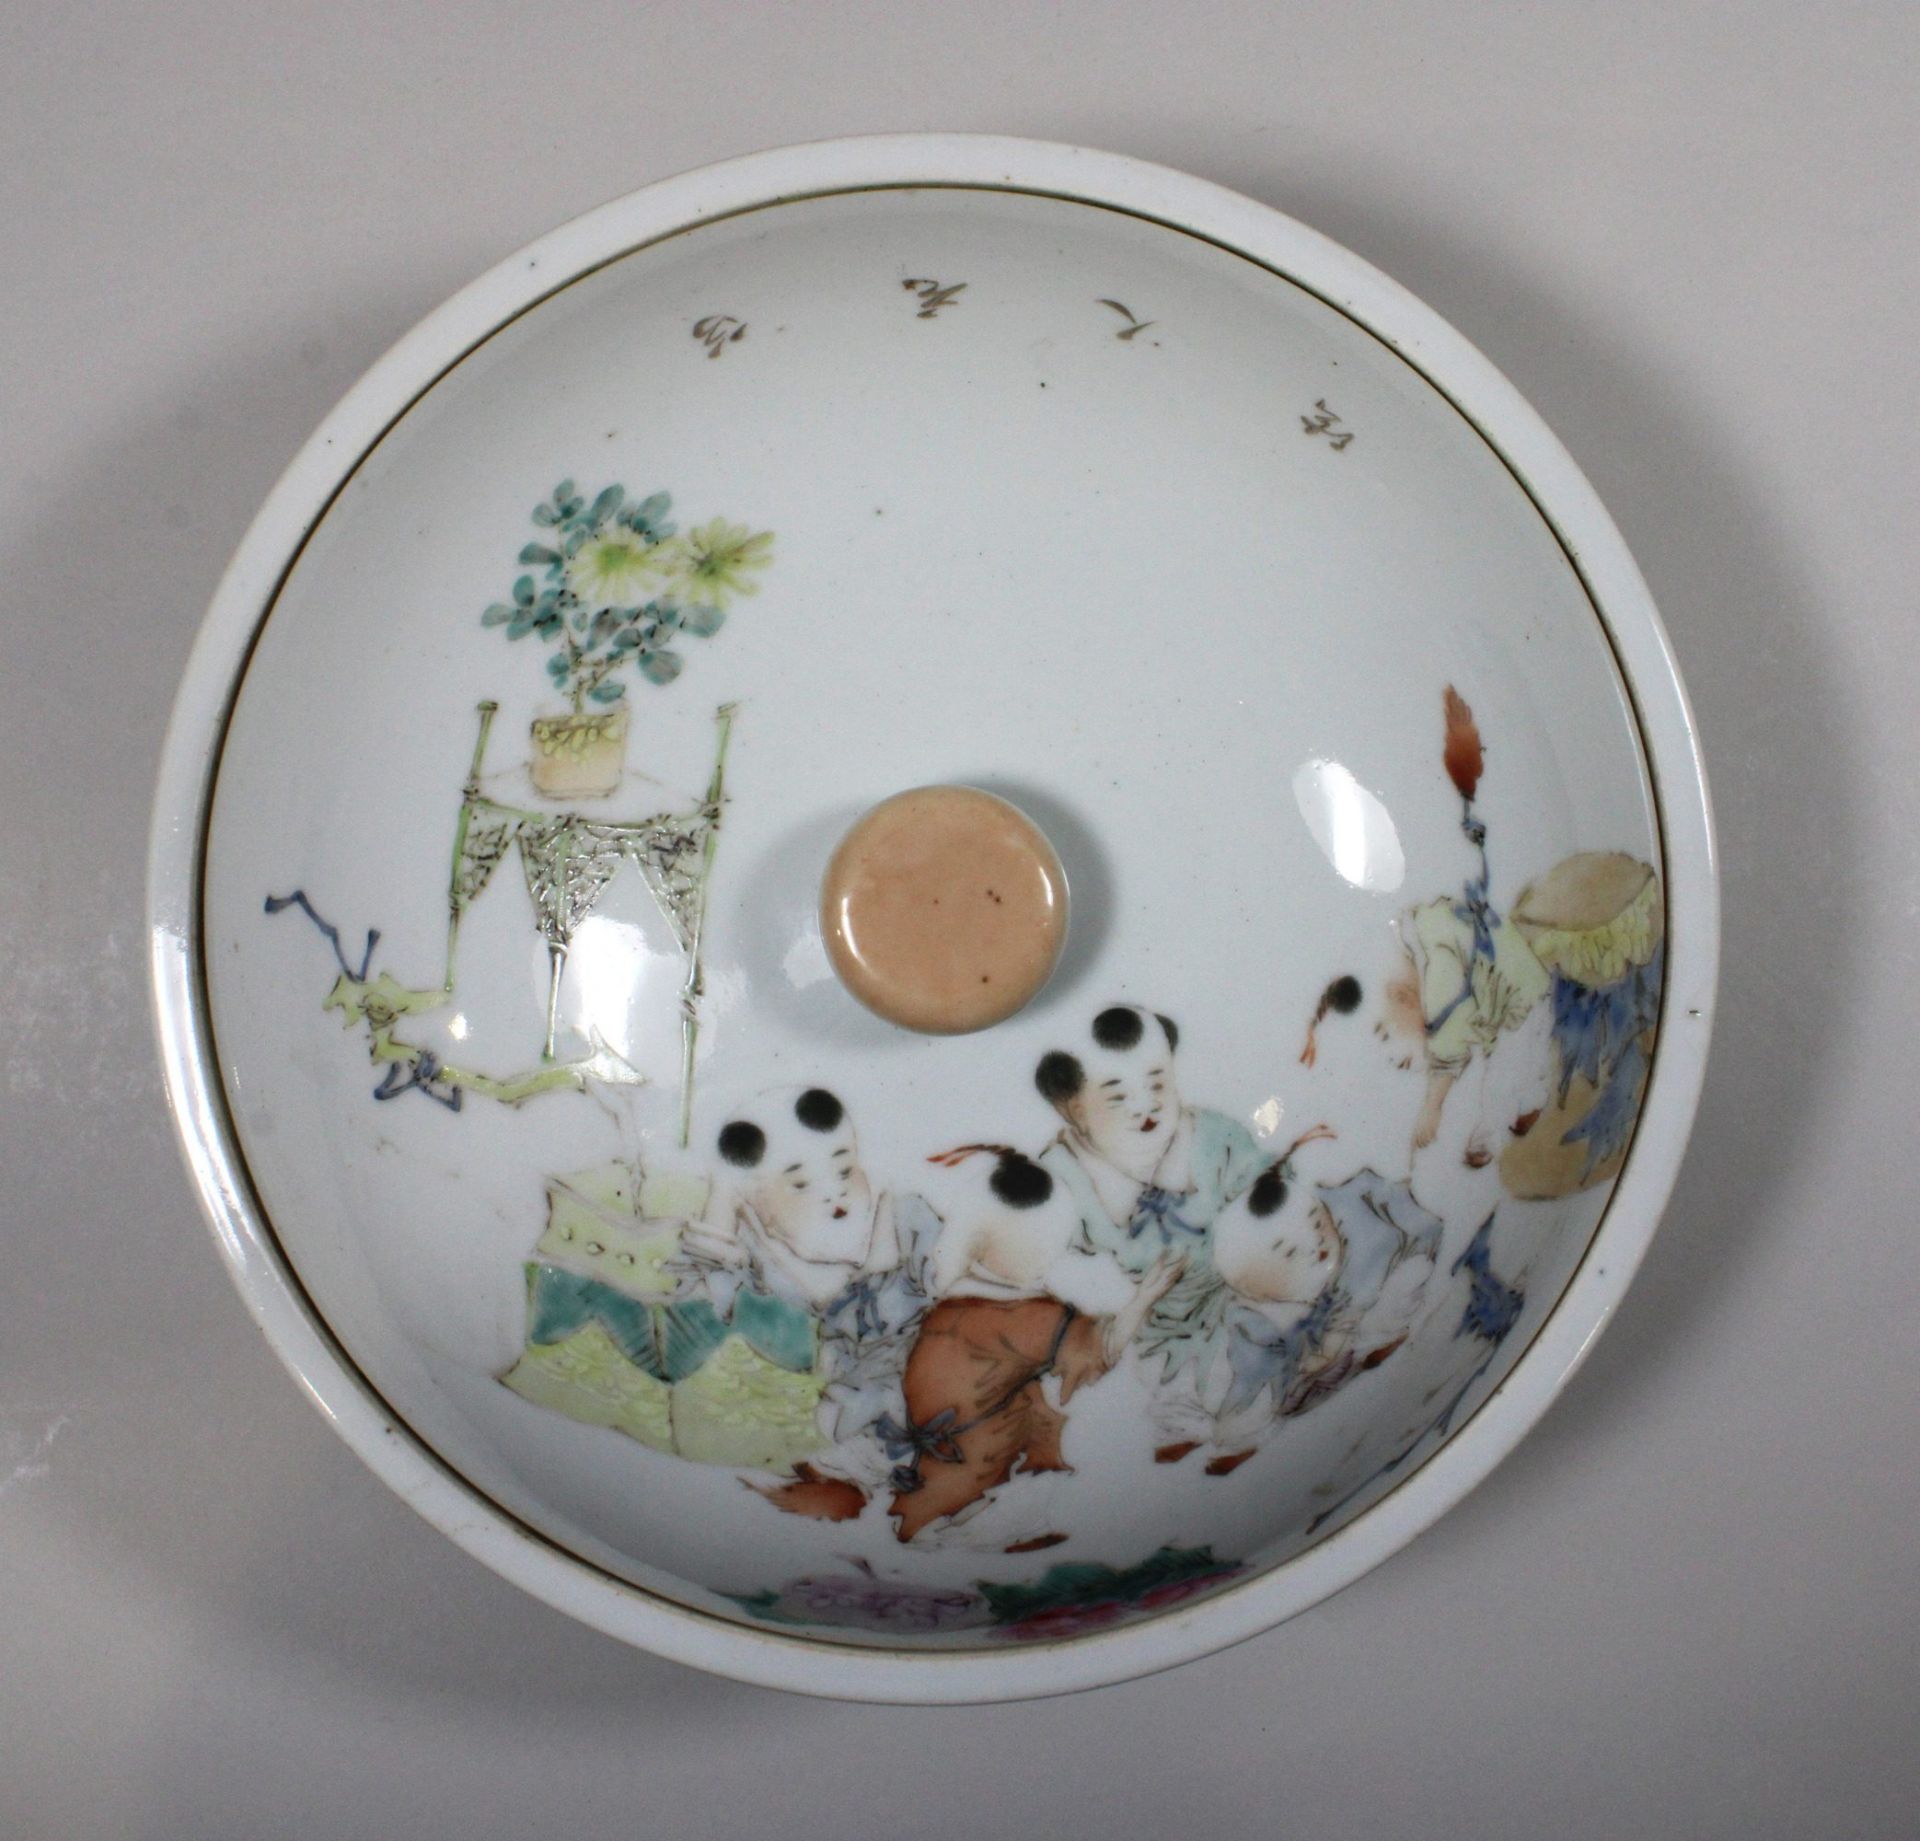 Topf mit Deckel, China, Porzellan, 19. Jh. Florale und figürliche Darstellung, farbig, Dm 24,5, - Image 2 of 3